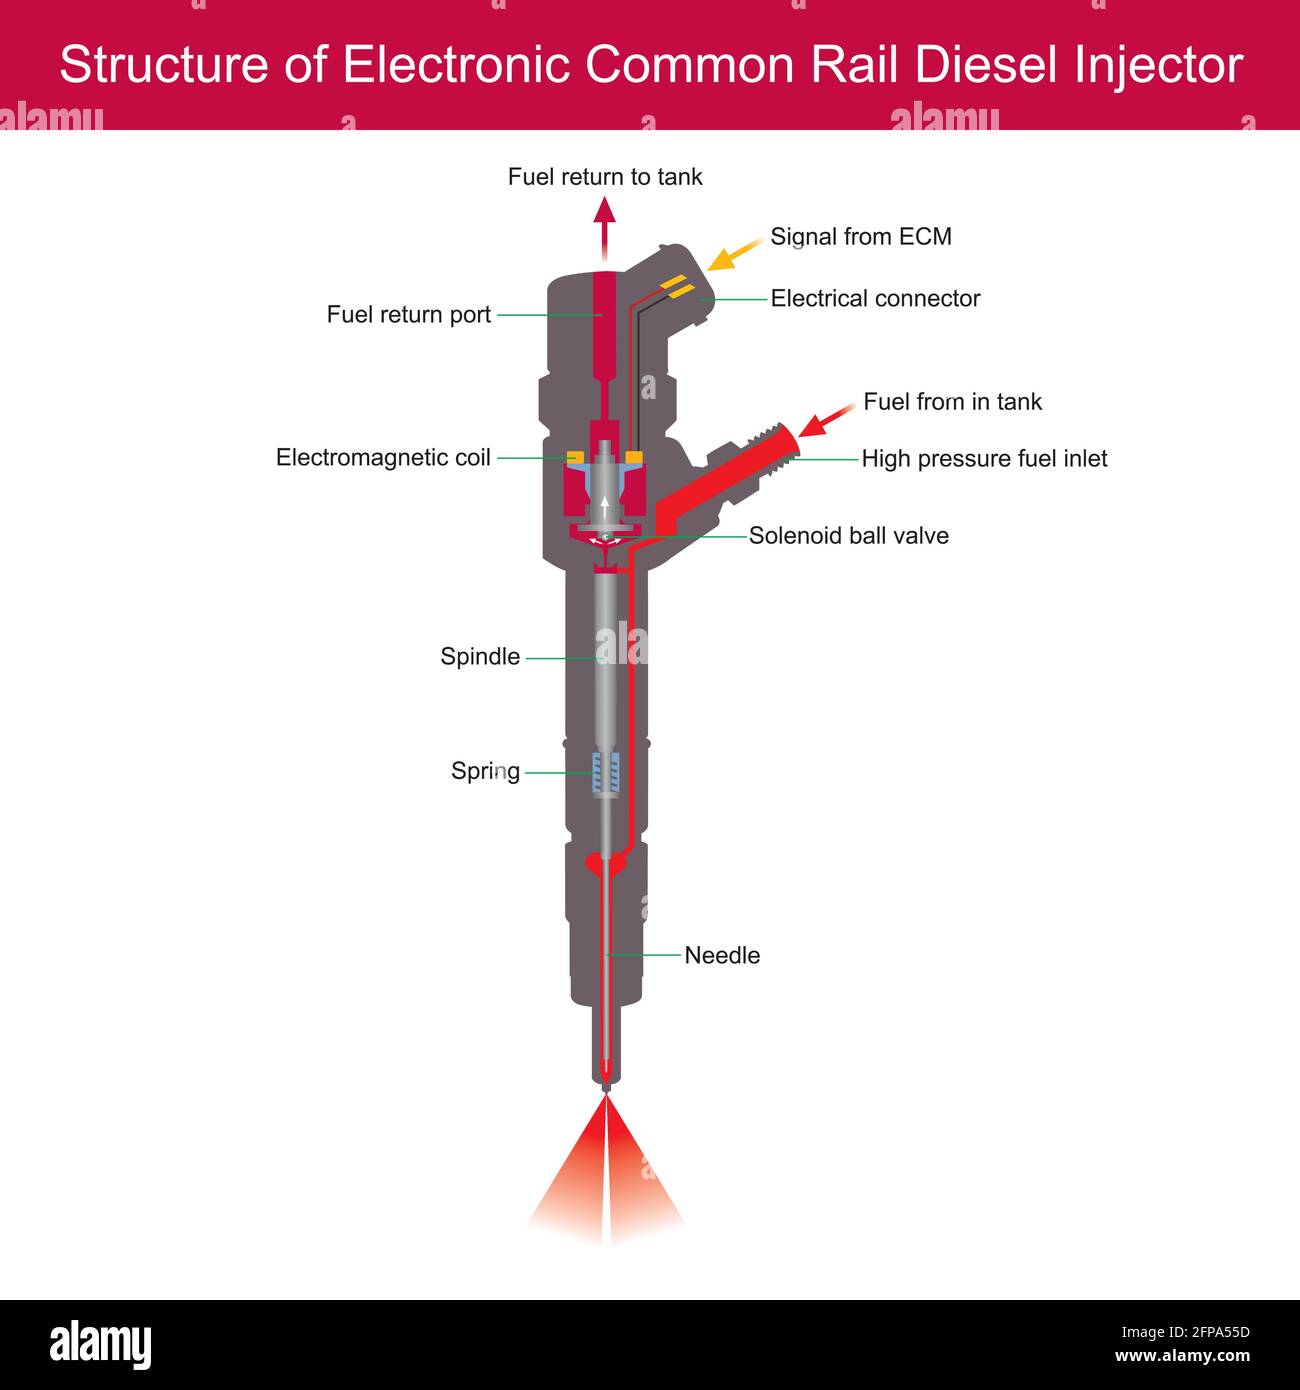 Struttura dell'iniettore diesel Common Rail elettronico. L'illustrazione illustra i componenti all'interno dell'iniettore diesel common rail elettronico. Illustrazione Vettoriale